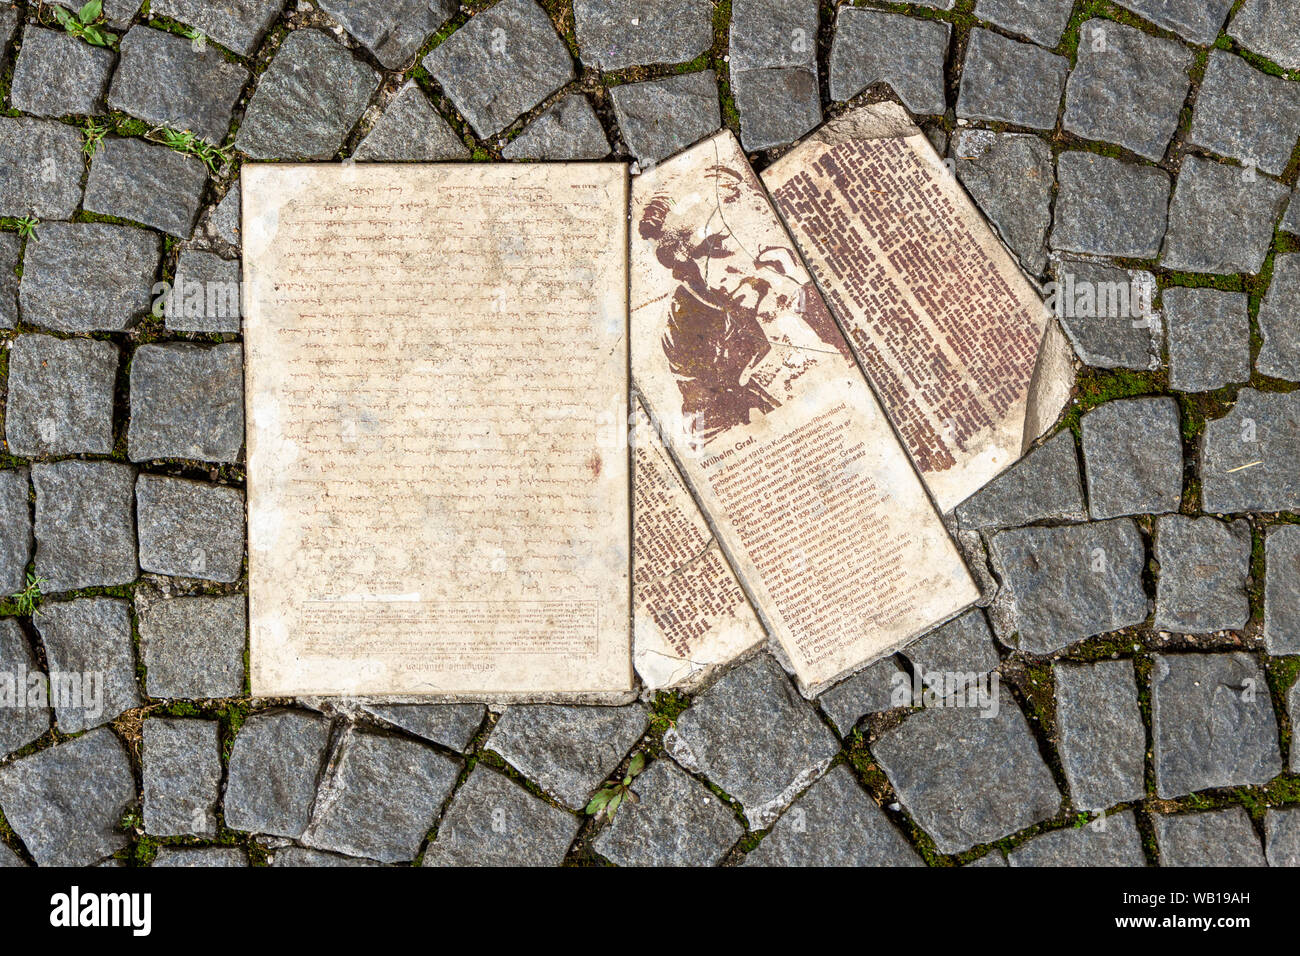 Mémorial de White Rose de tracts éparpillés sur la chaussée à l'extérieur du bâtiment de l'université Ludwig Maximilian à Munich, Allemagne. Banque D'Images